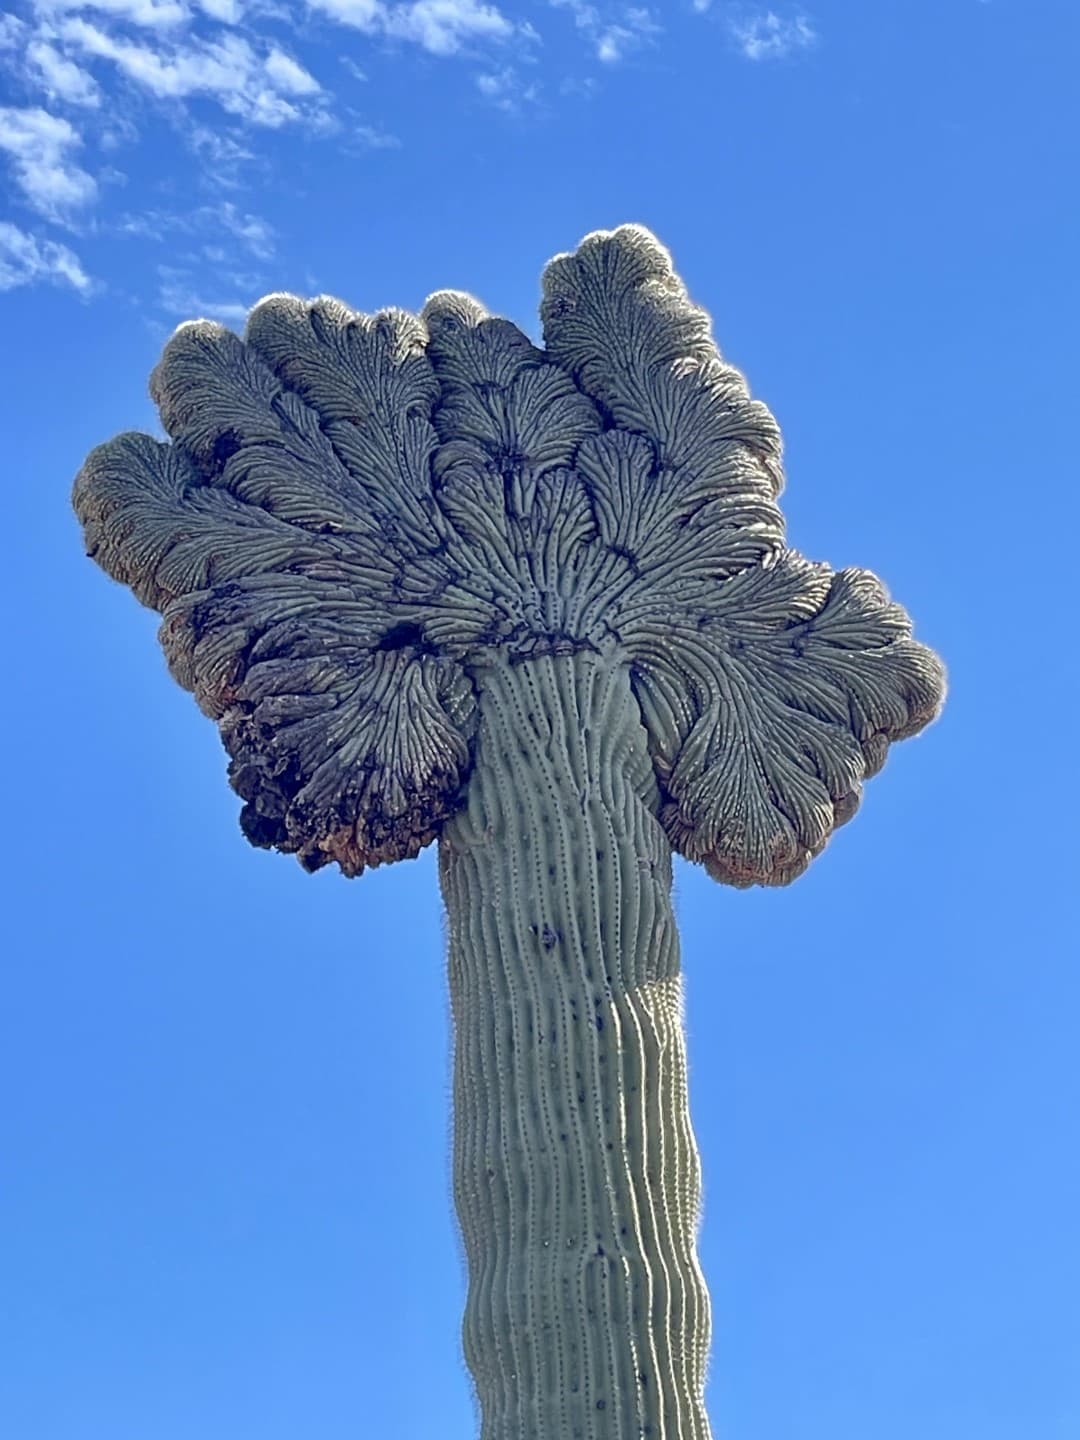 saguaro con forma extraña